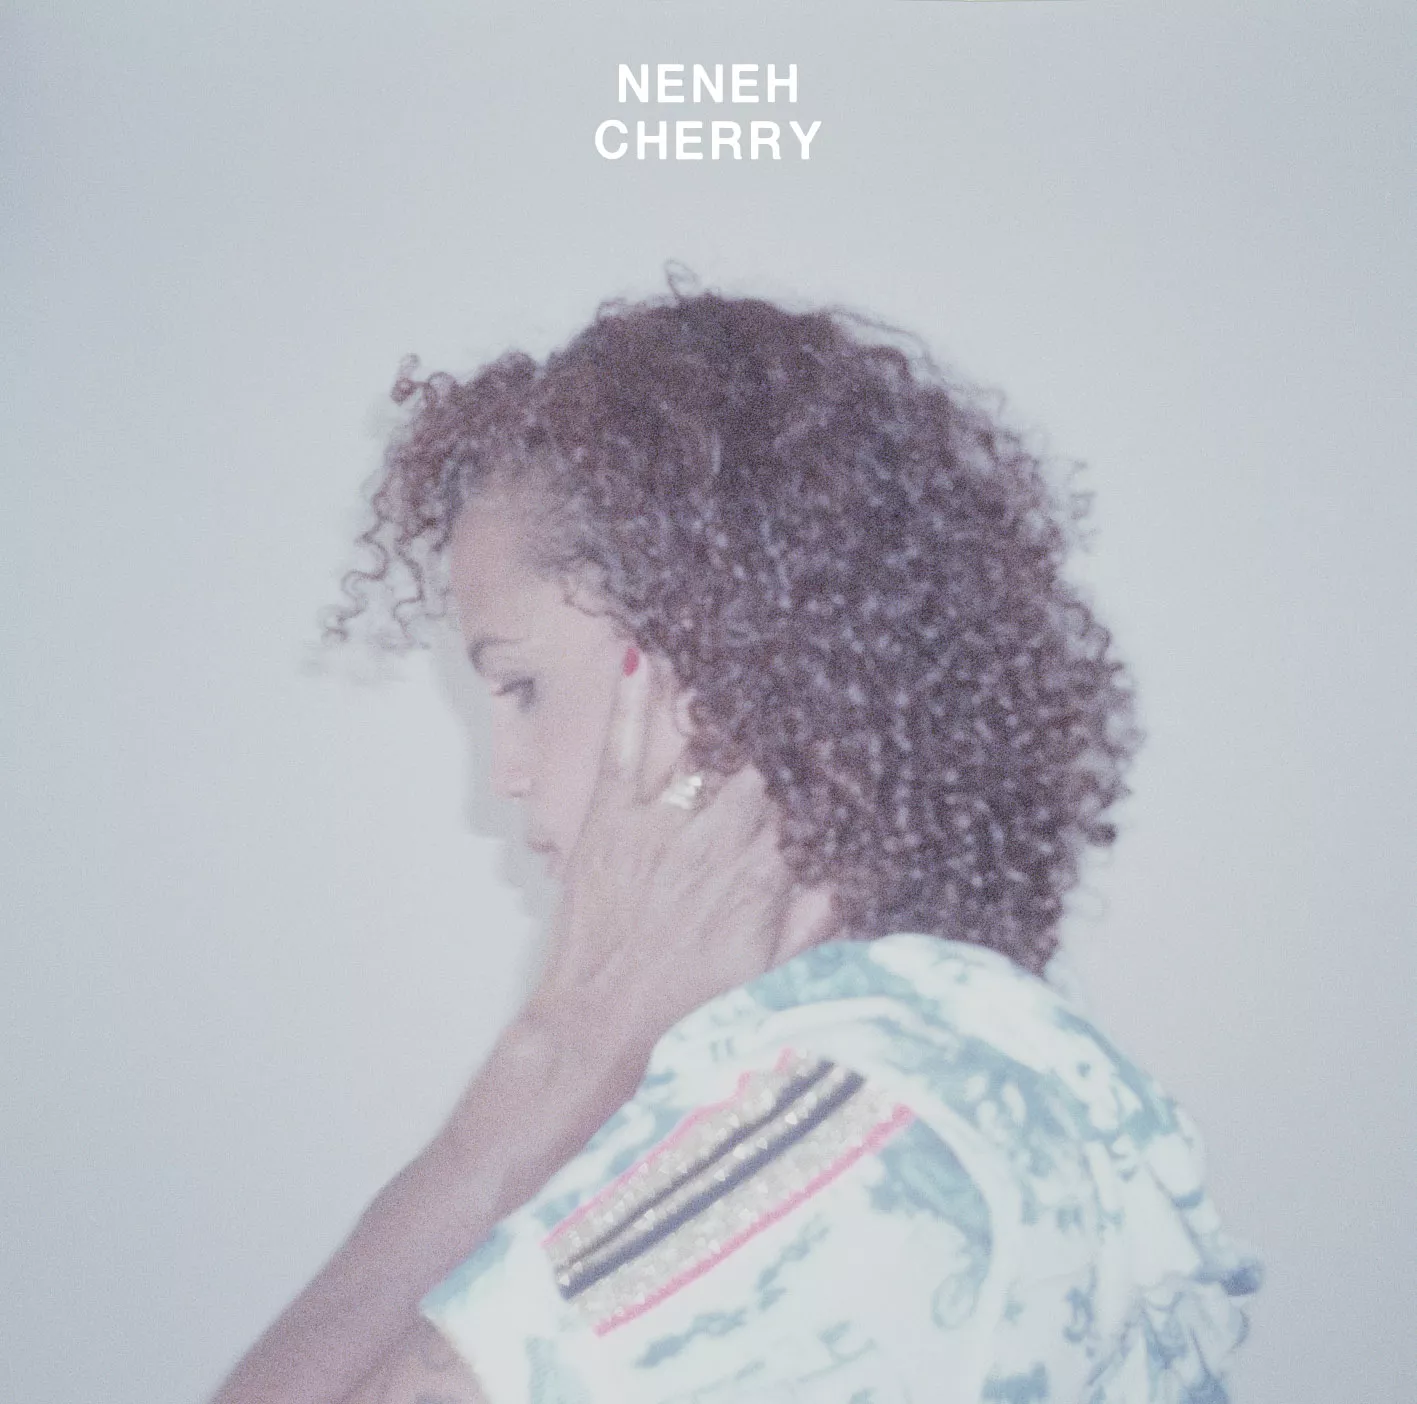 Neneh Cherry fylder 50